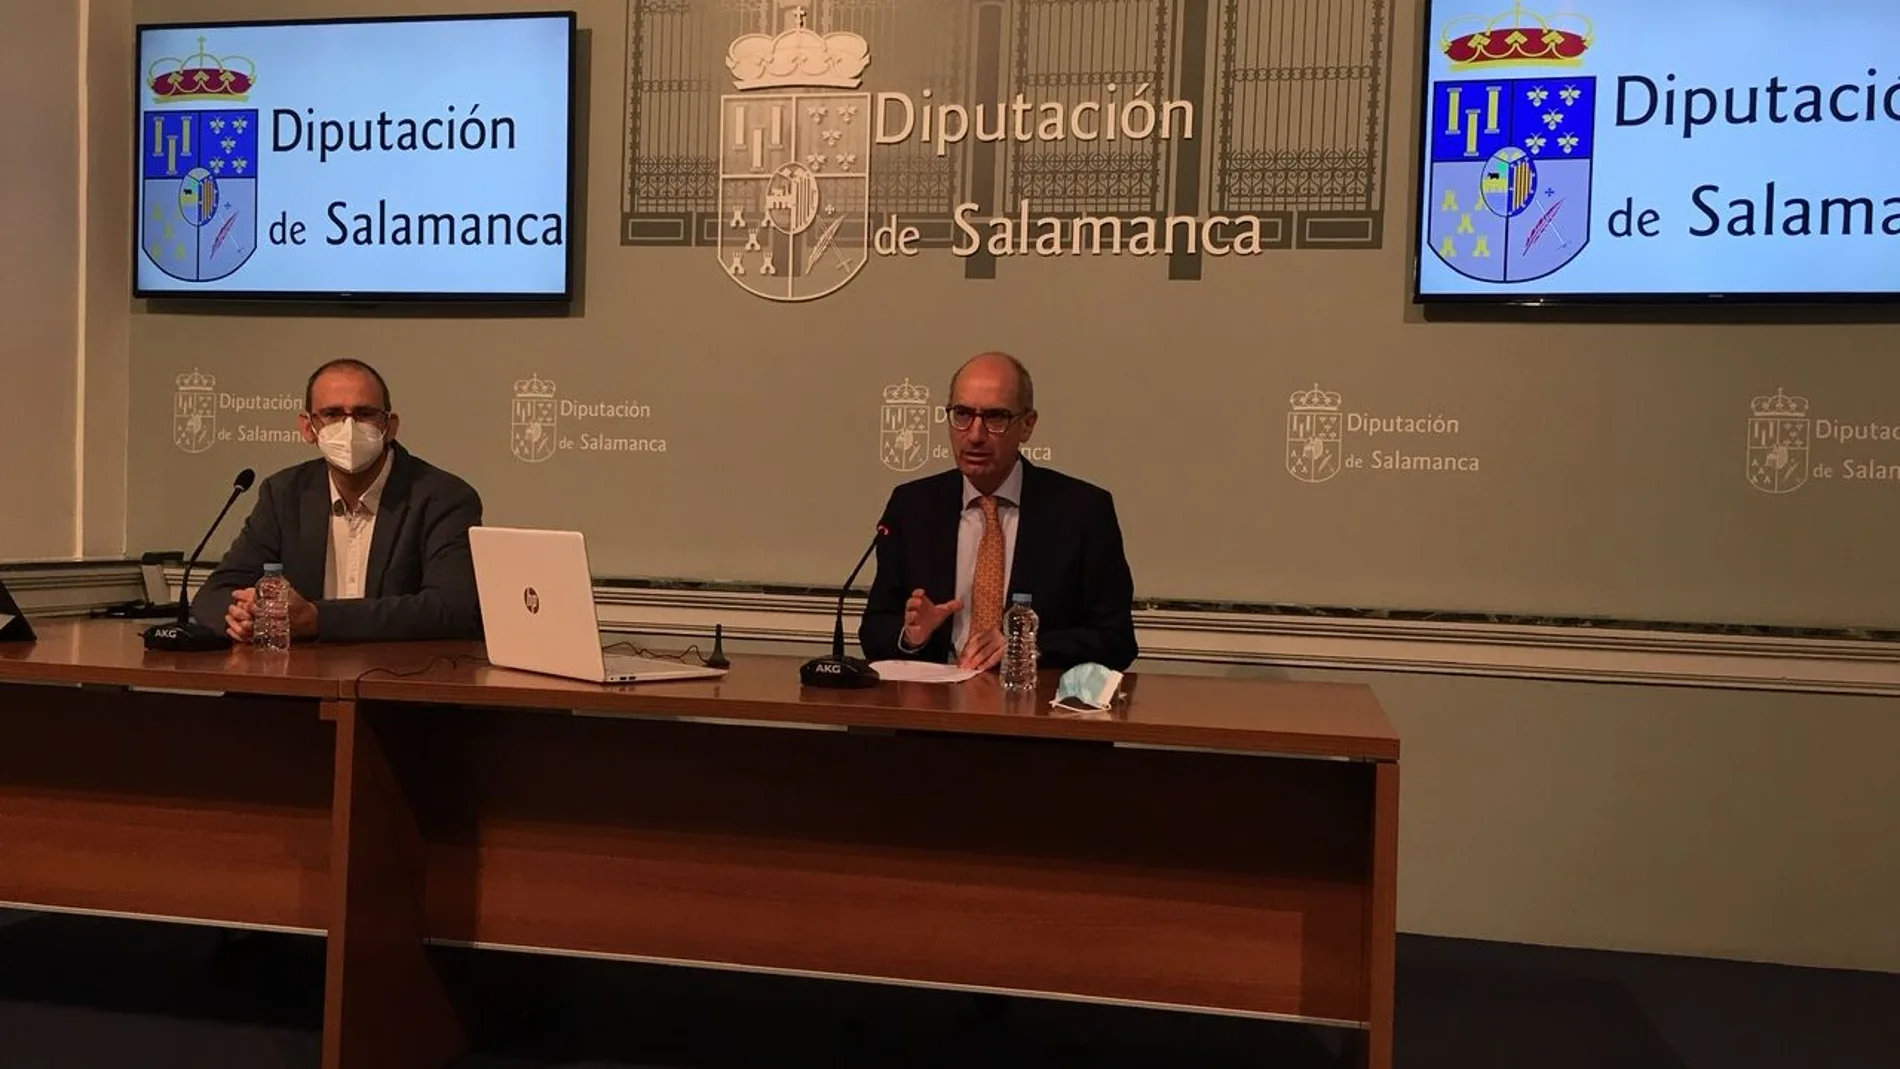 El presidente de la Diputación de Salamanca, Javier Iglesias, presenta la propuesta acompañado del diputado Antonio Luis Sánchez